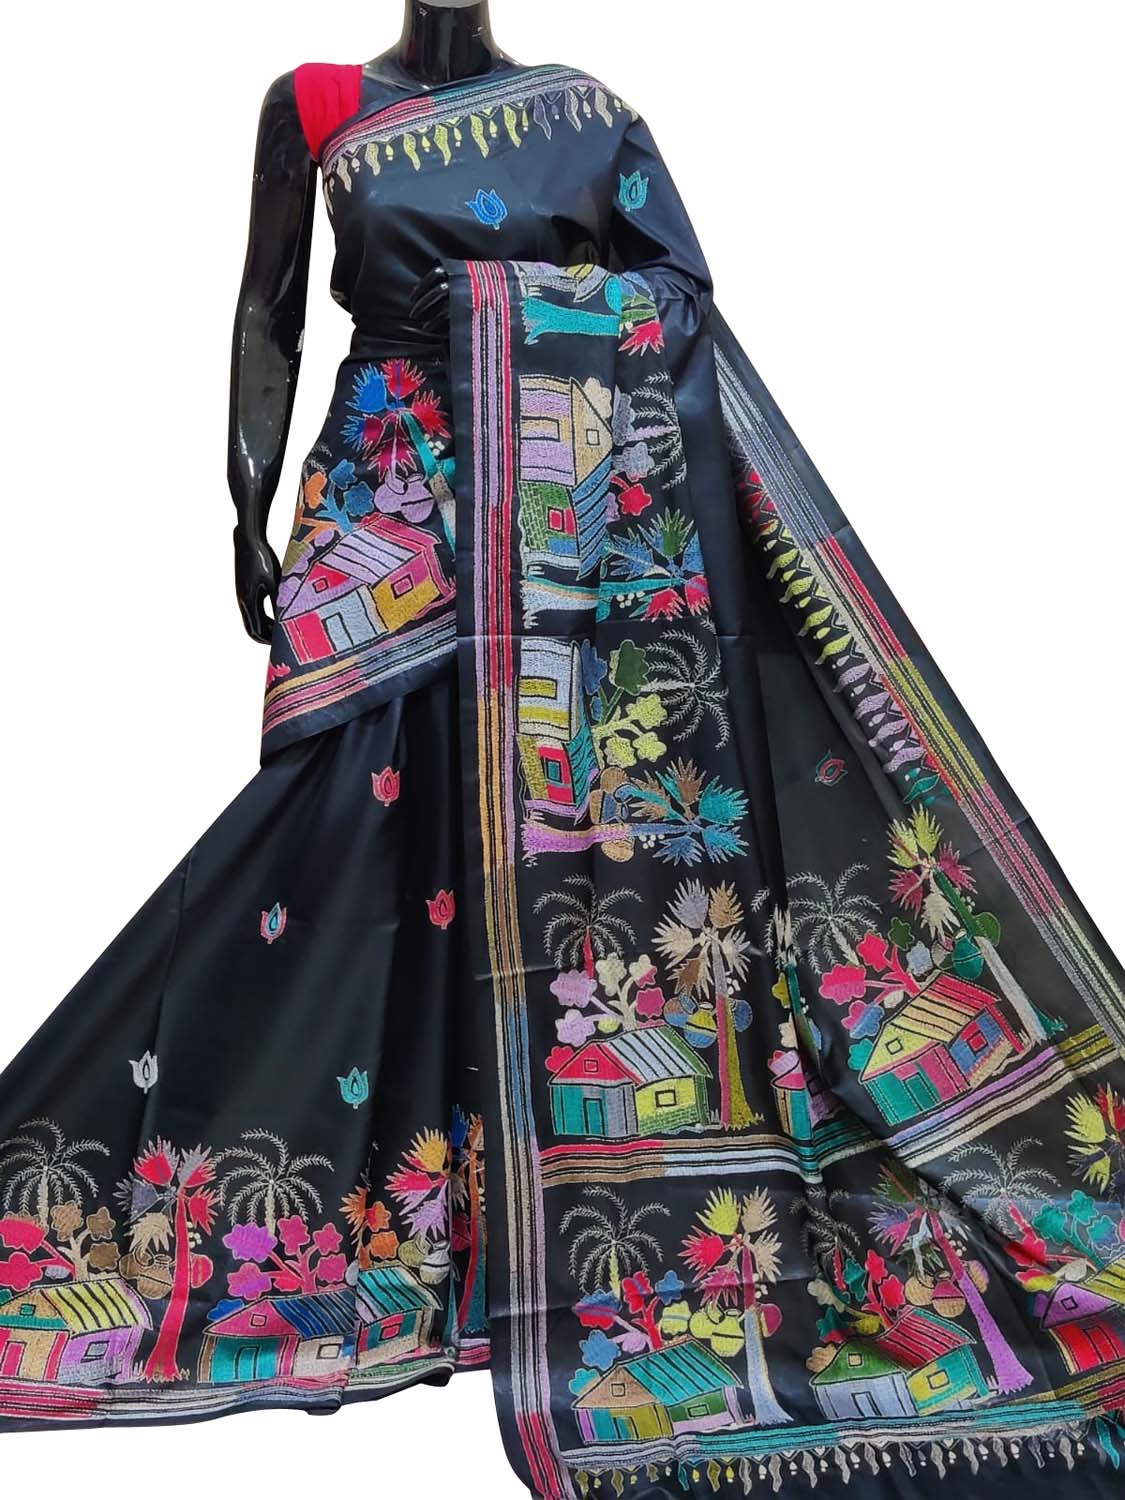 Exquisite Black Hand Embroidered Kantha Work Bangalore Silk Saree - Luxurion World